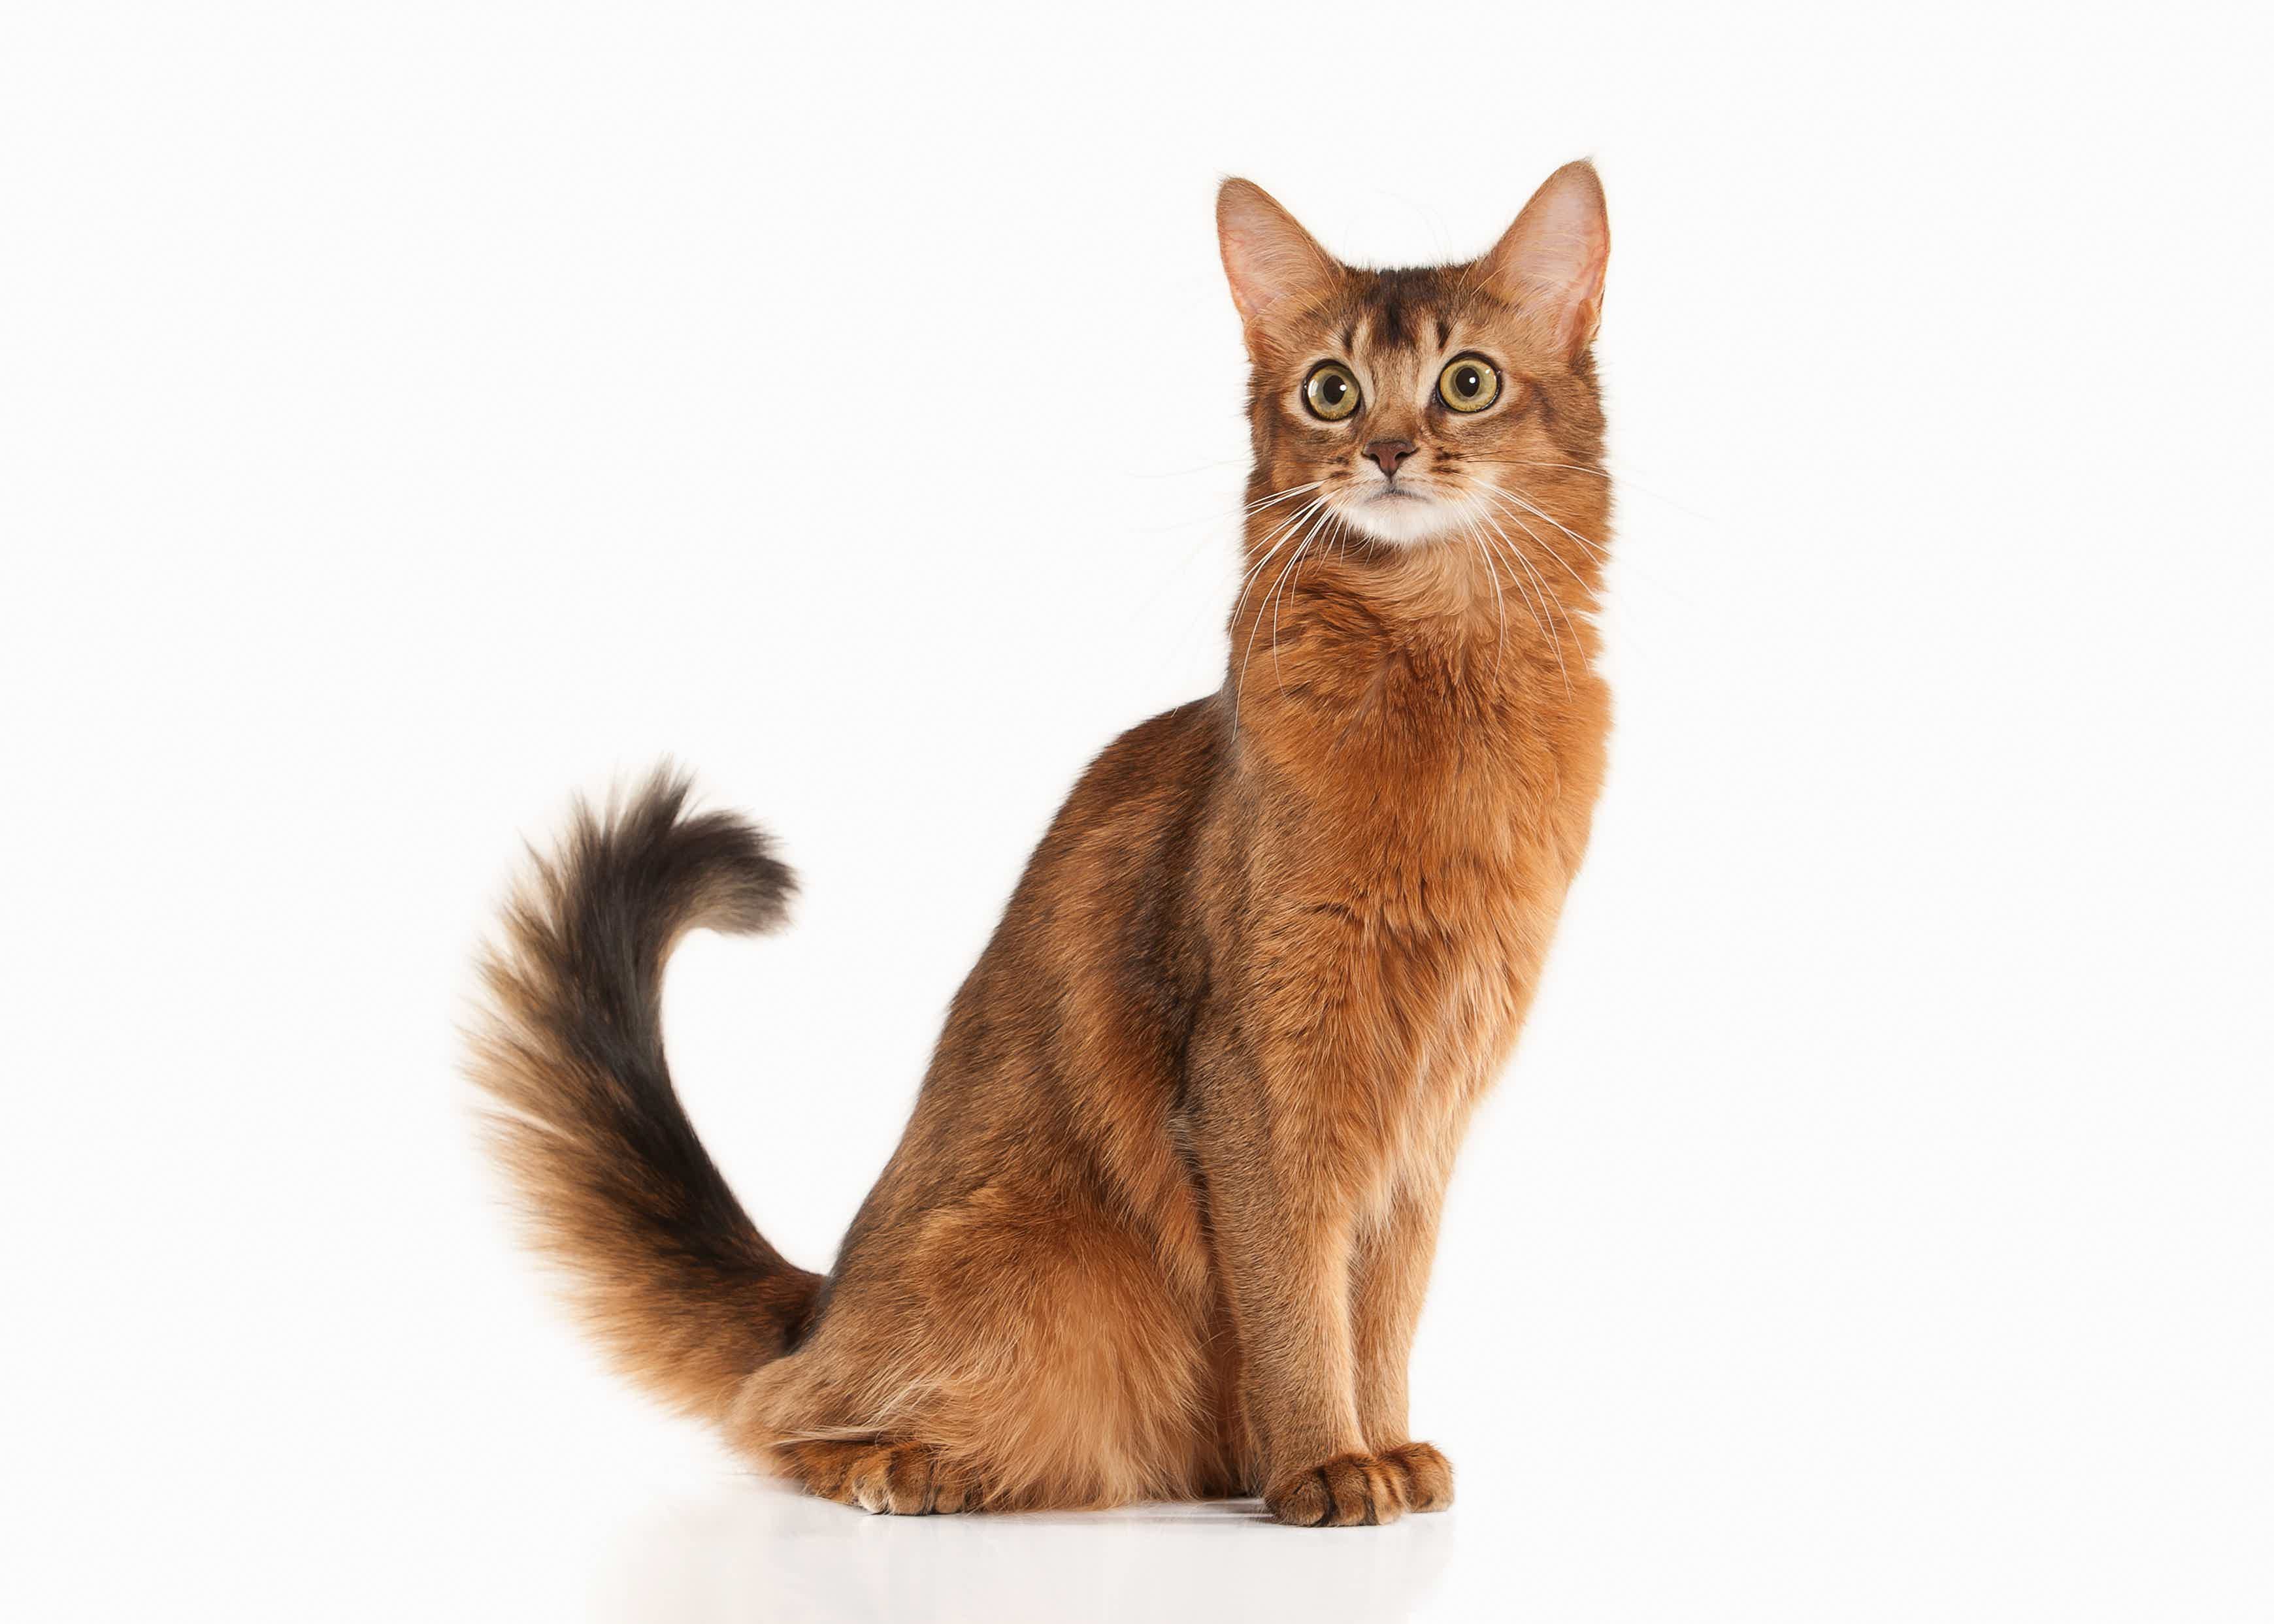 Conheça a raça de gato Somali. Fonte: Adobe Stock.